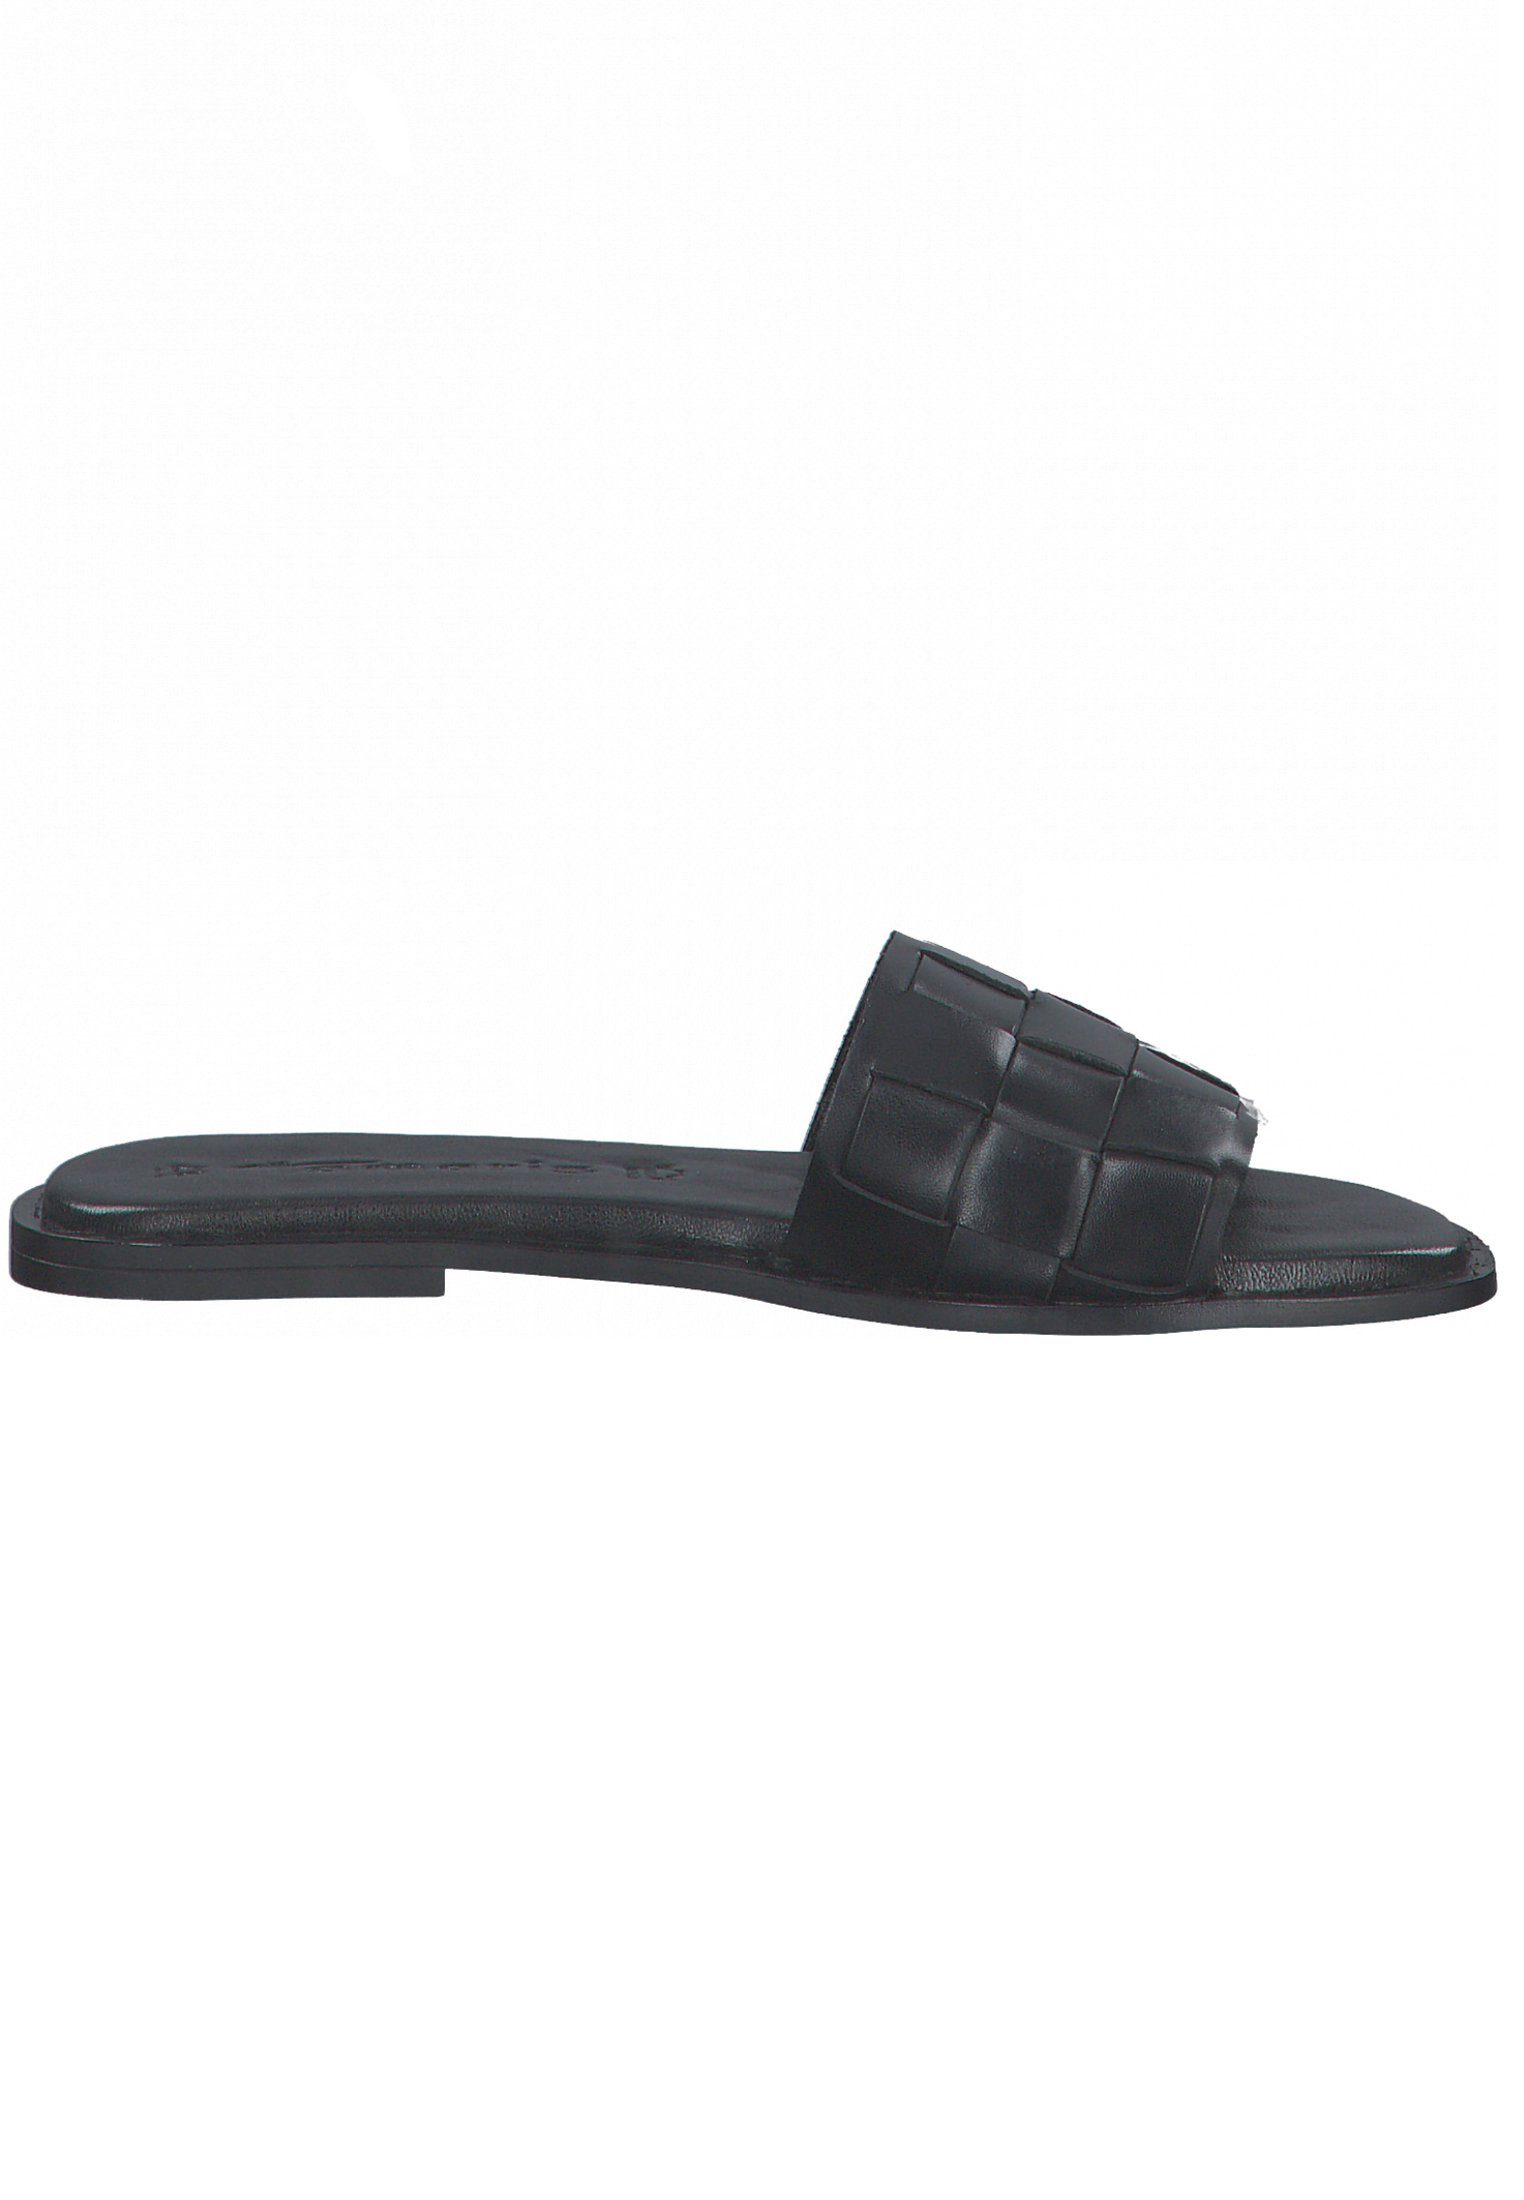 Sandale 003 Leather Black 1-27122-28 Tamaris